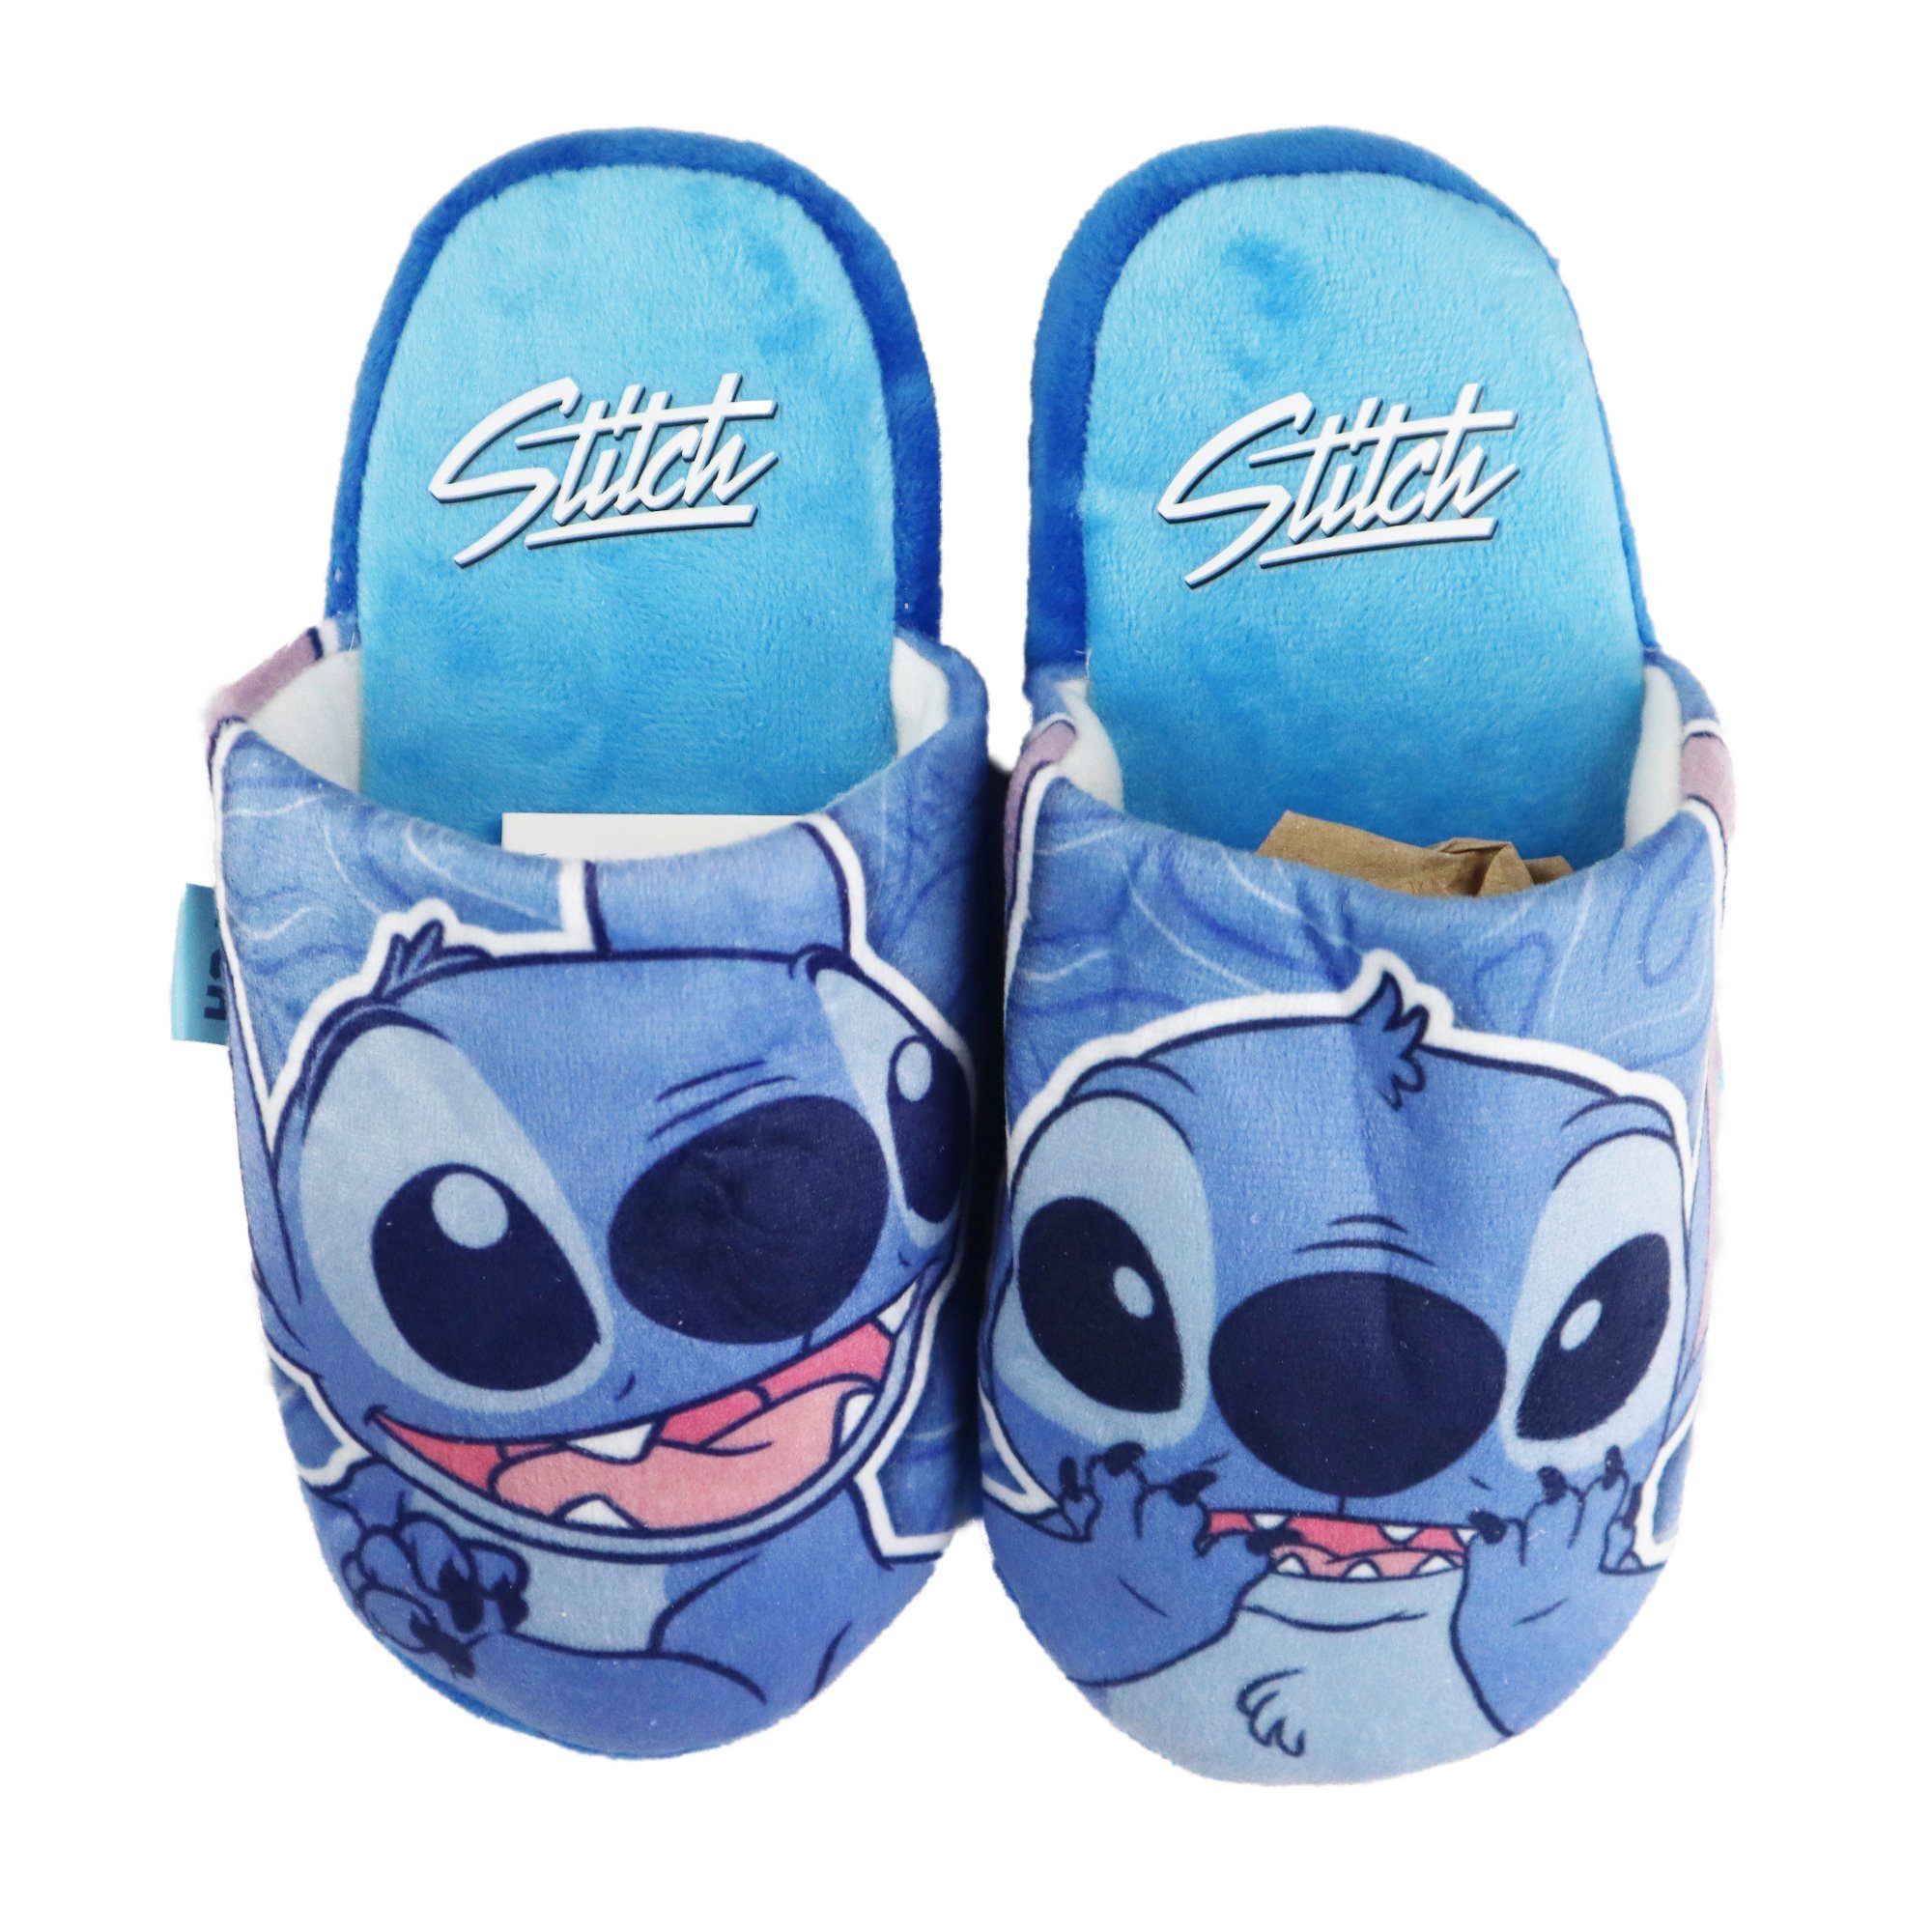 Disney Disney Stitch Kinder Jungen Hausschuhe Slipper Pantoffel Schlüpfschuhe Gr. 28 - 35